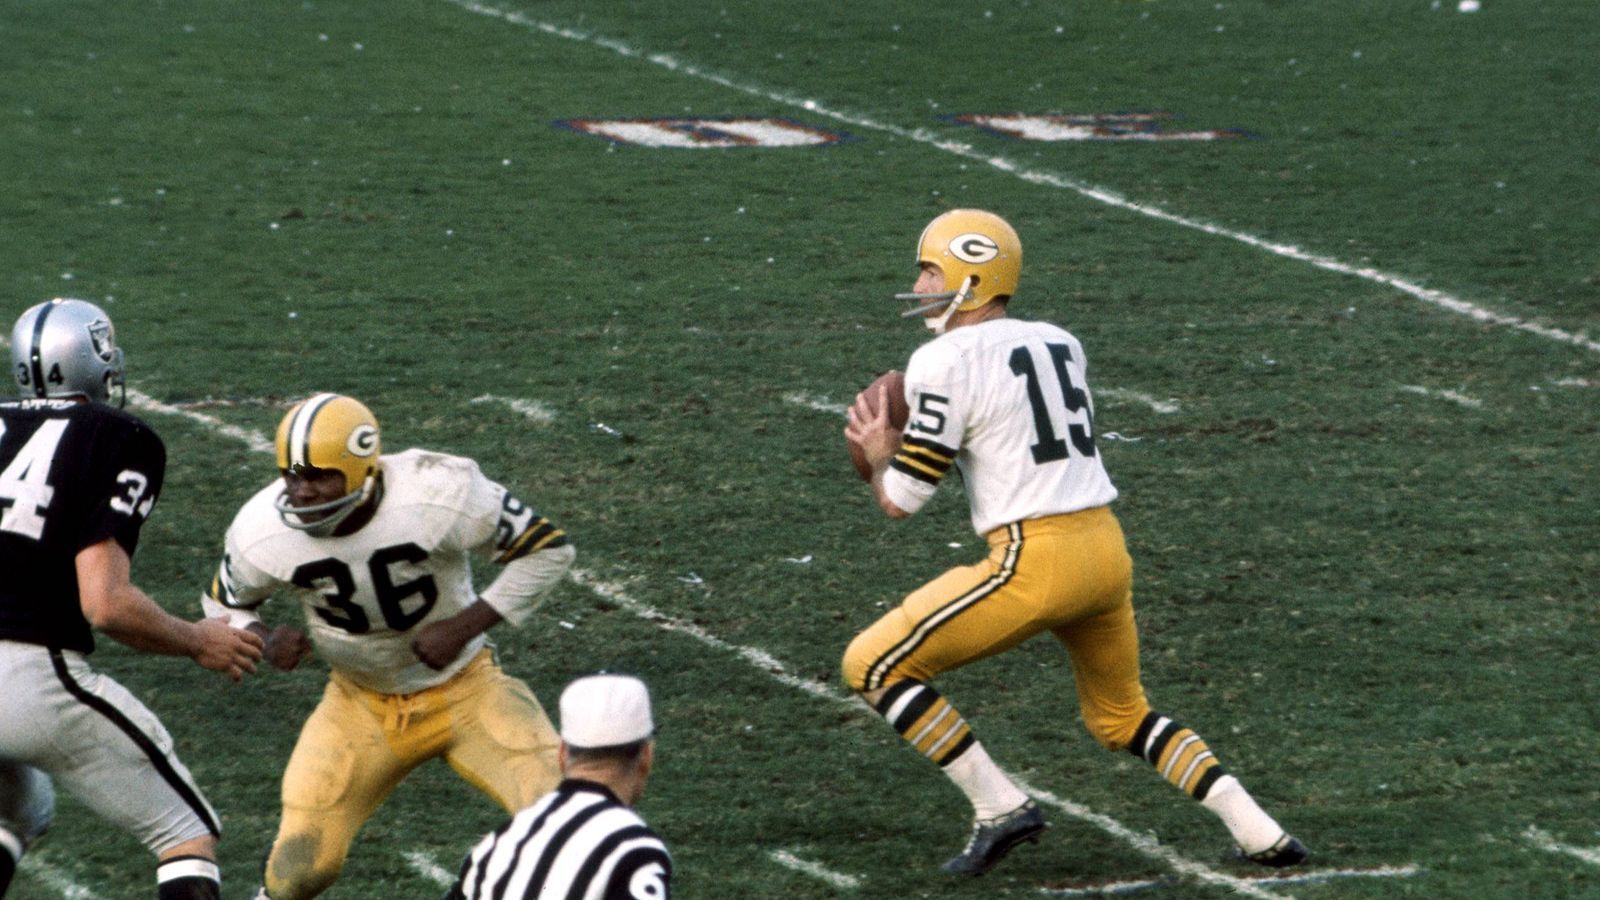 
                <strong>Platz 10: Packers vs. Falcons 1967</strong><br>
                Green Bay Packers vs. Atlanta Falcons 56:3 - Die Green Bay Packers waren bereits in den frühen Jahren des American Football eine Macht. Vor allem durch ihren Quarterback Bart Starr gelang es den "Cheeseheads" immer wieder, ihre Gegner zu dominieren. So auch beim 56:3-Sieg über die Falcons im Jahr 1967.
              